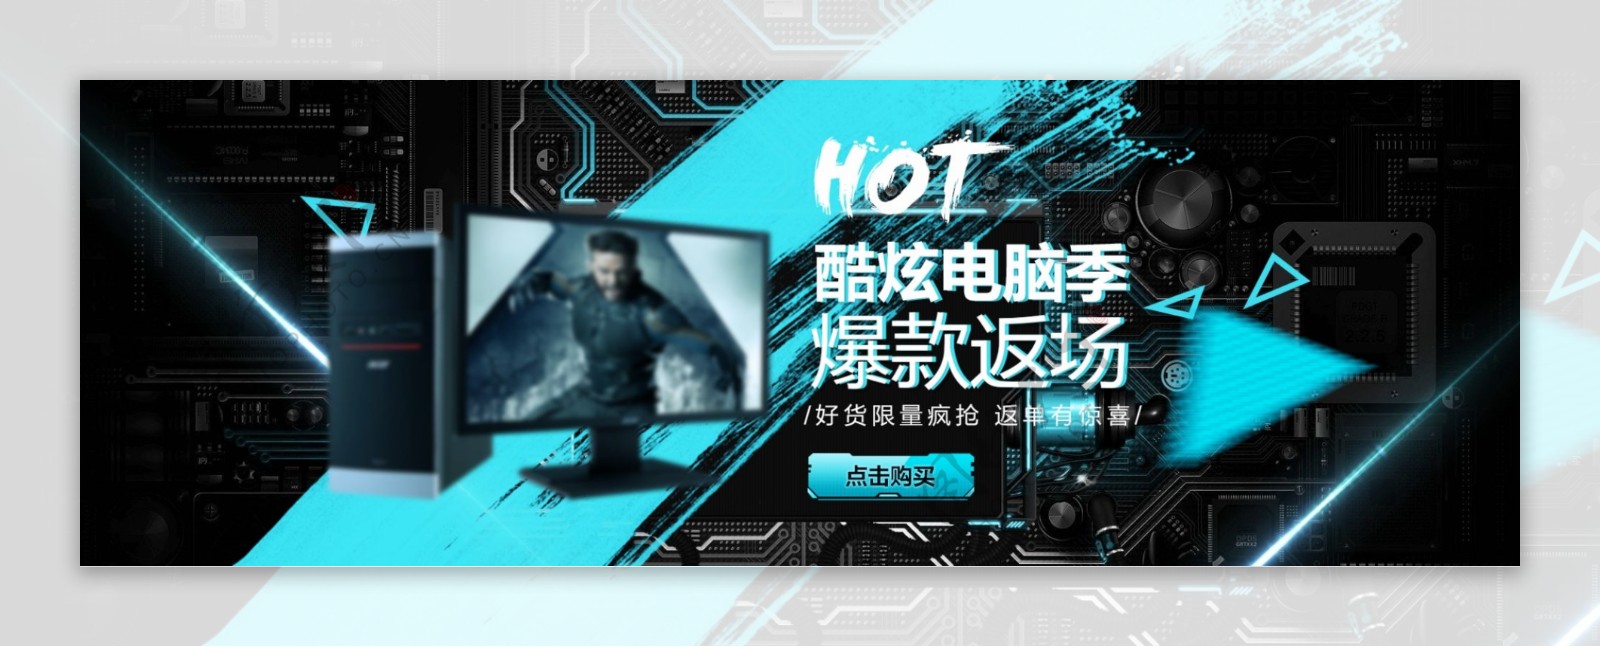 蓝黑时尚数码产品科技电脑淘宝banner